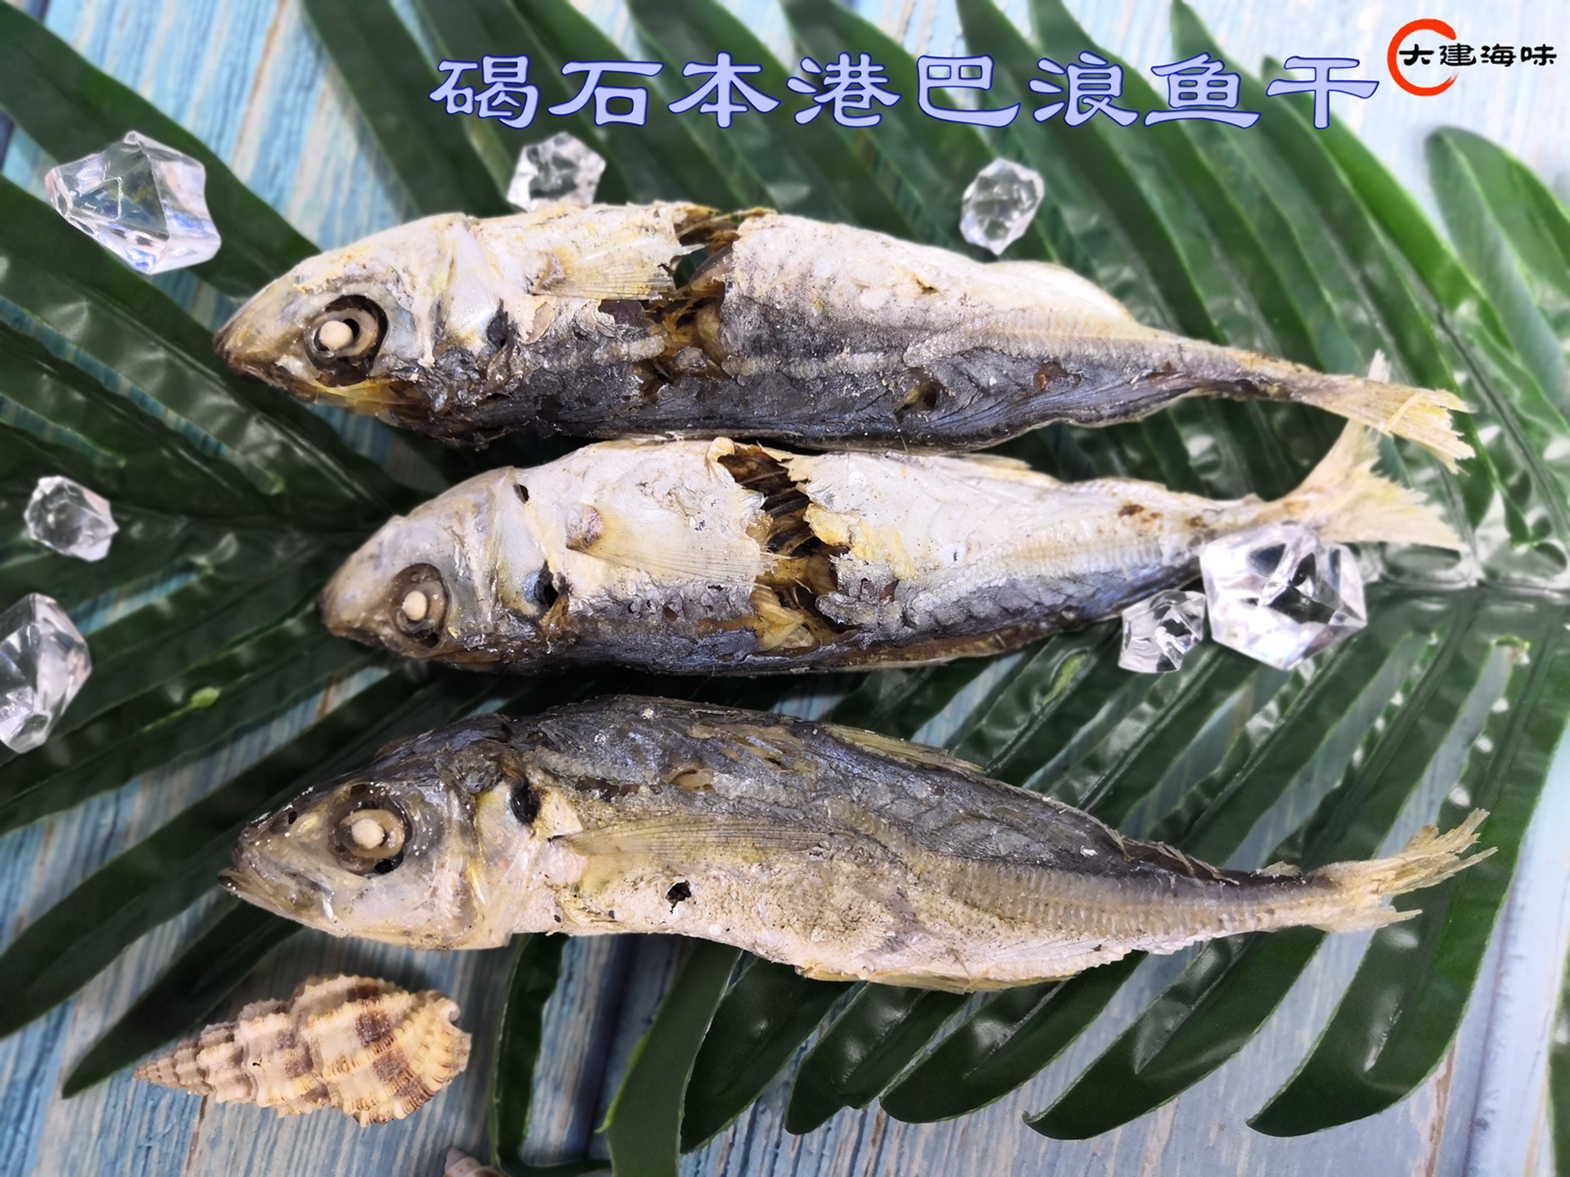 广东潮汕尾碣石特产渔家自晒淡干巴浪熟鱼干野生即食鱼干海鲜干货